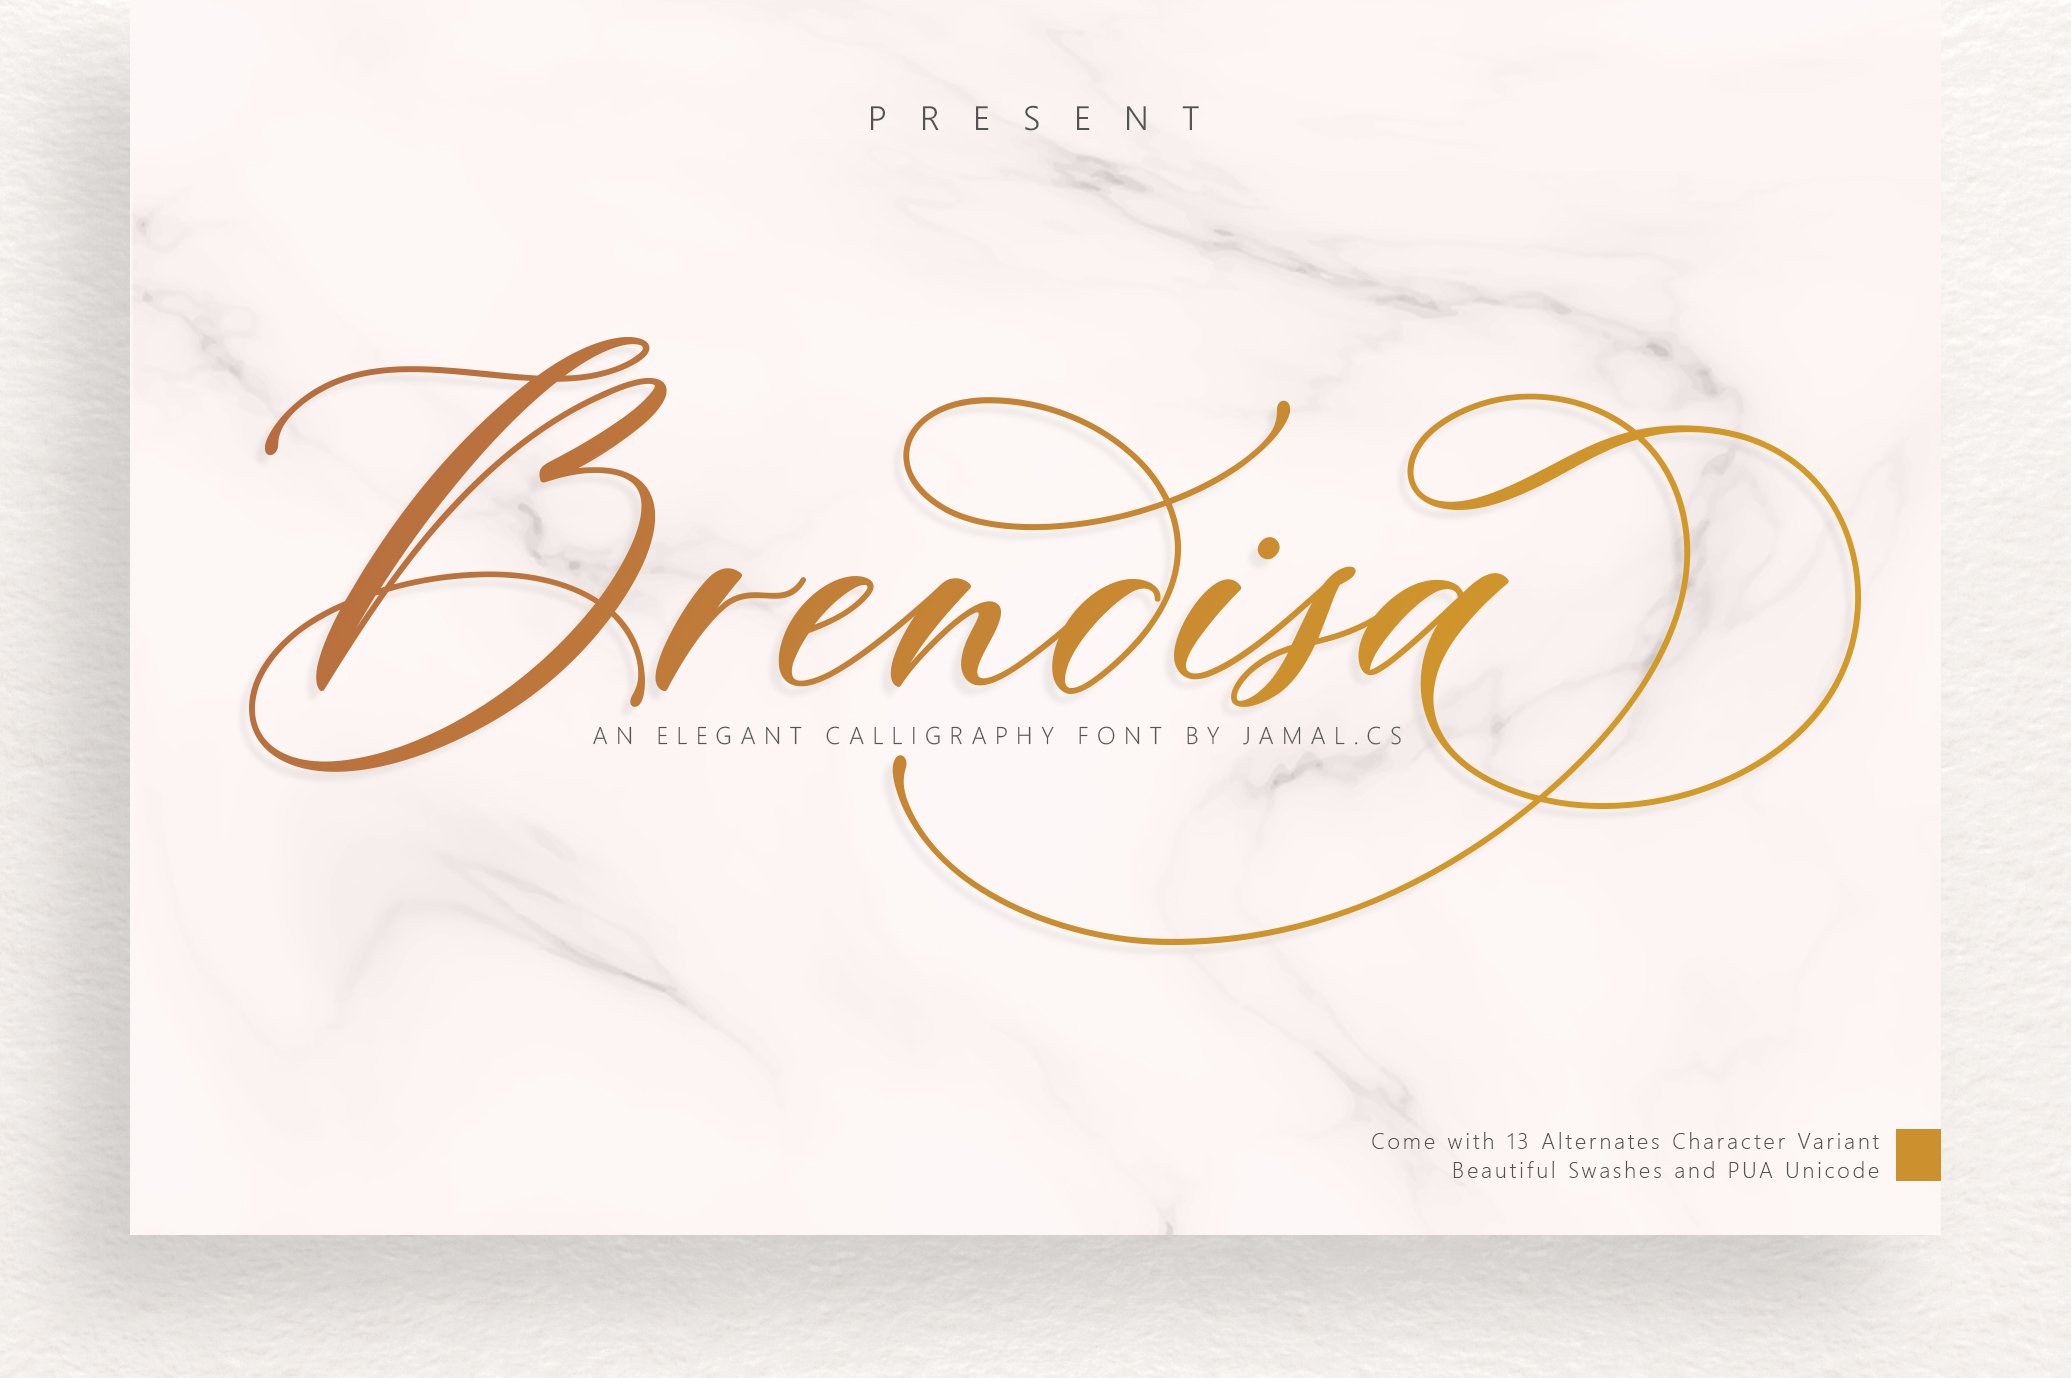 Brendisa Script cover image.